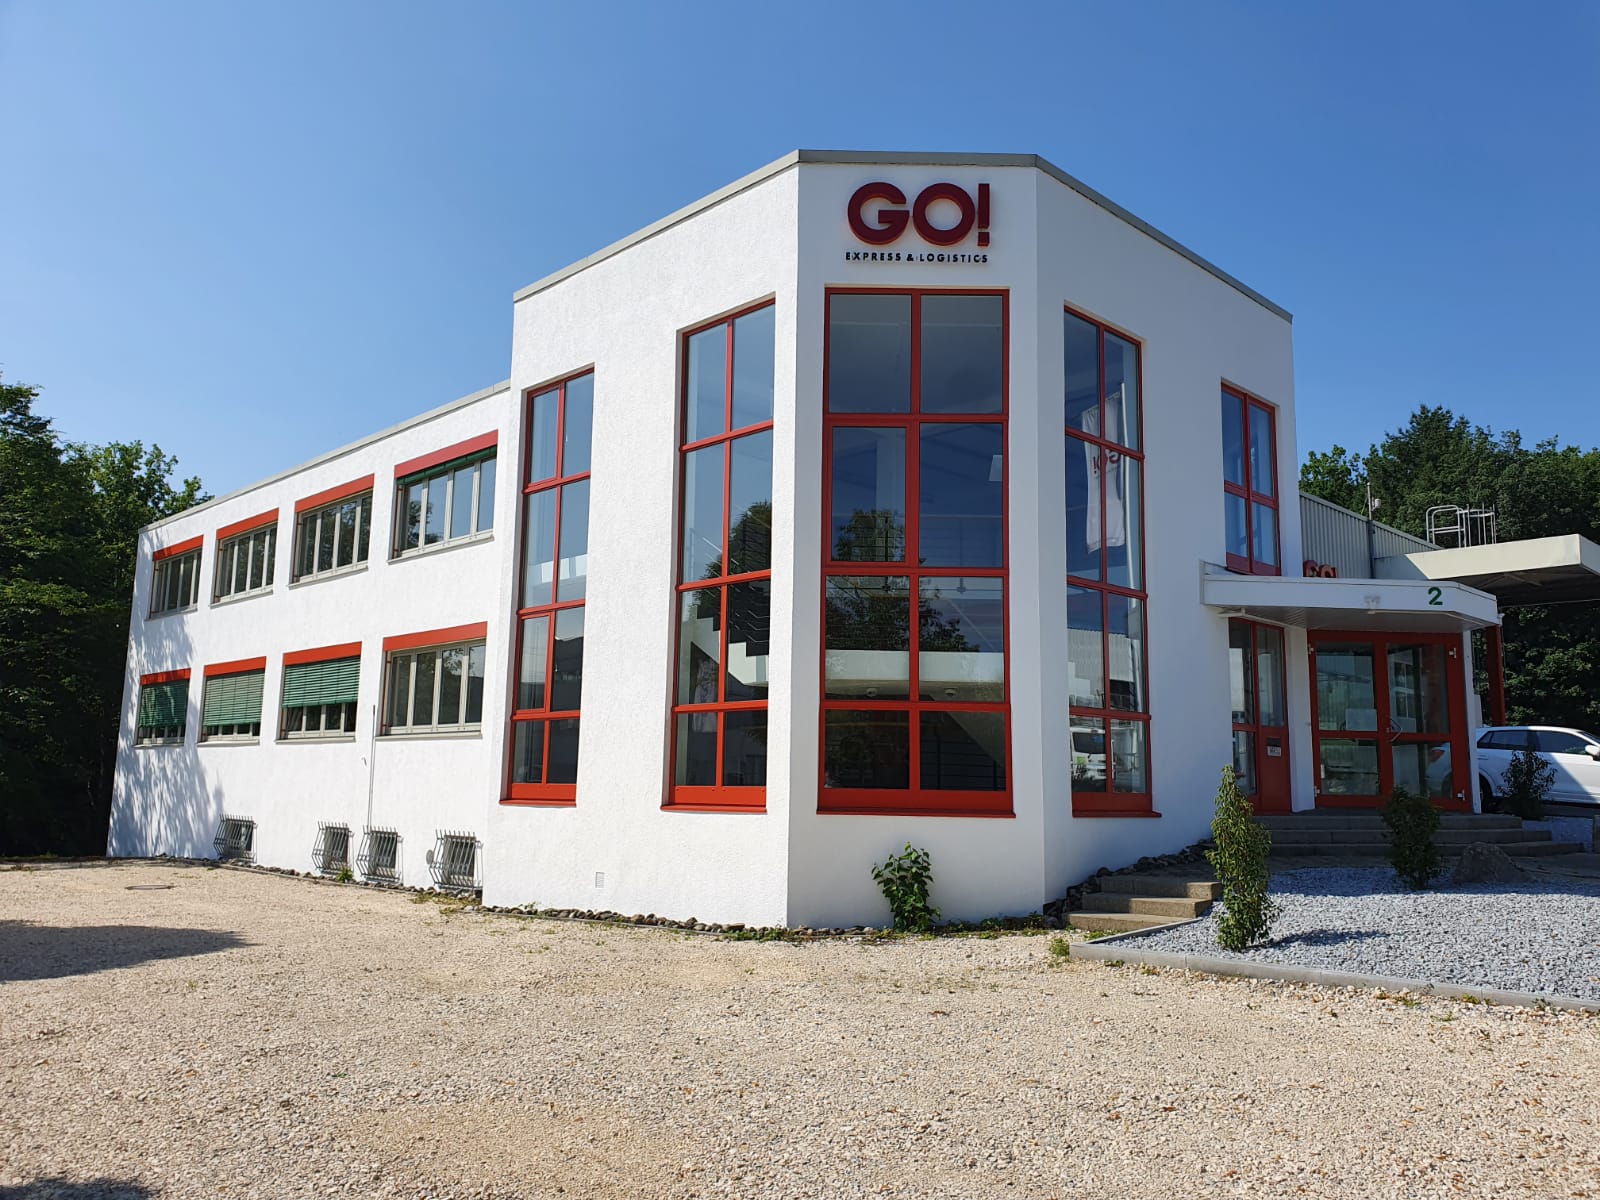 Bilder GO! Express & Logistics Südwest GmbH & Co. KG, Zweigniederlassung Tübingen